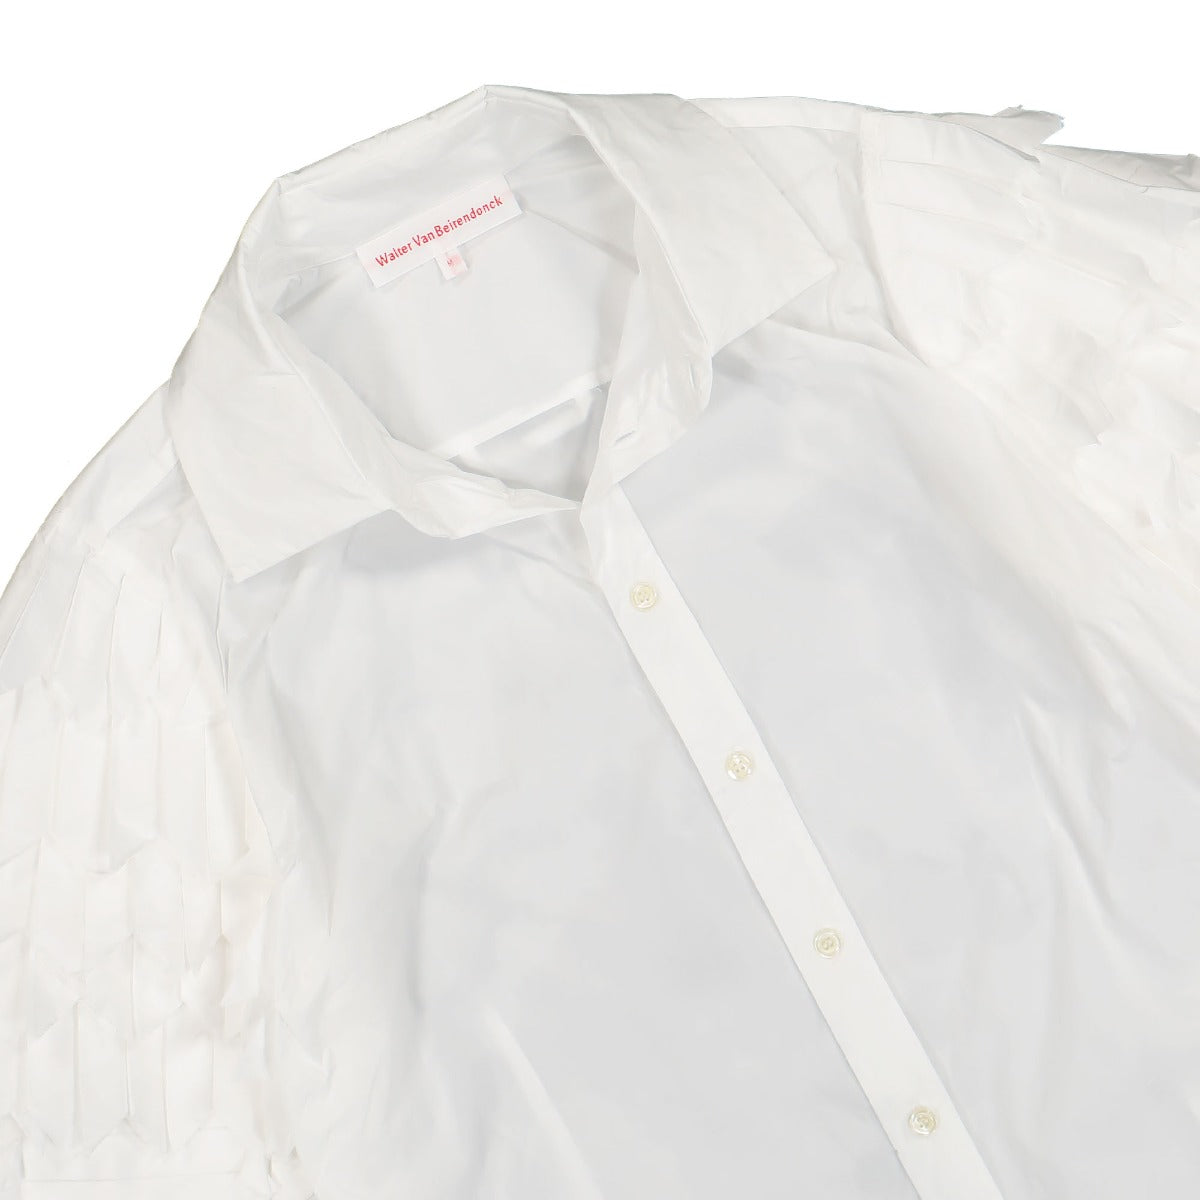 T-shirt Walter Van Beirendonck White size XL International in